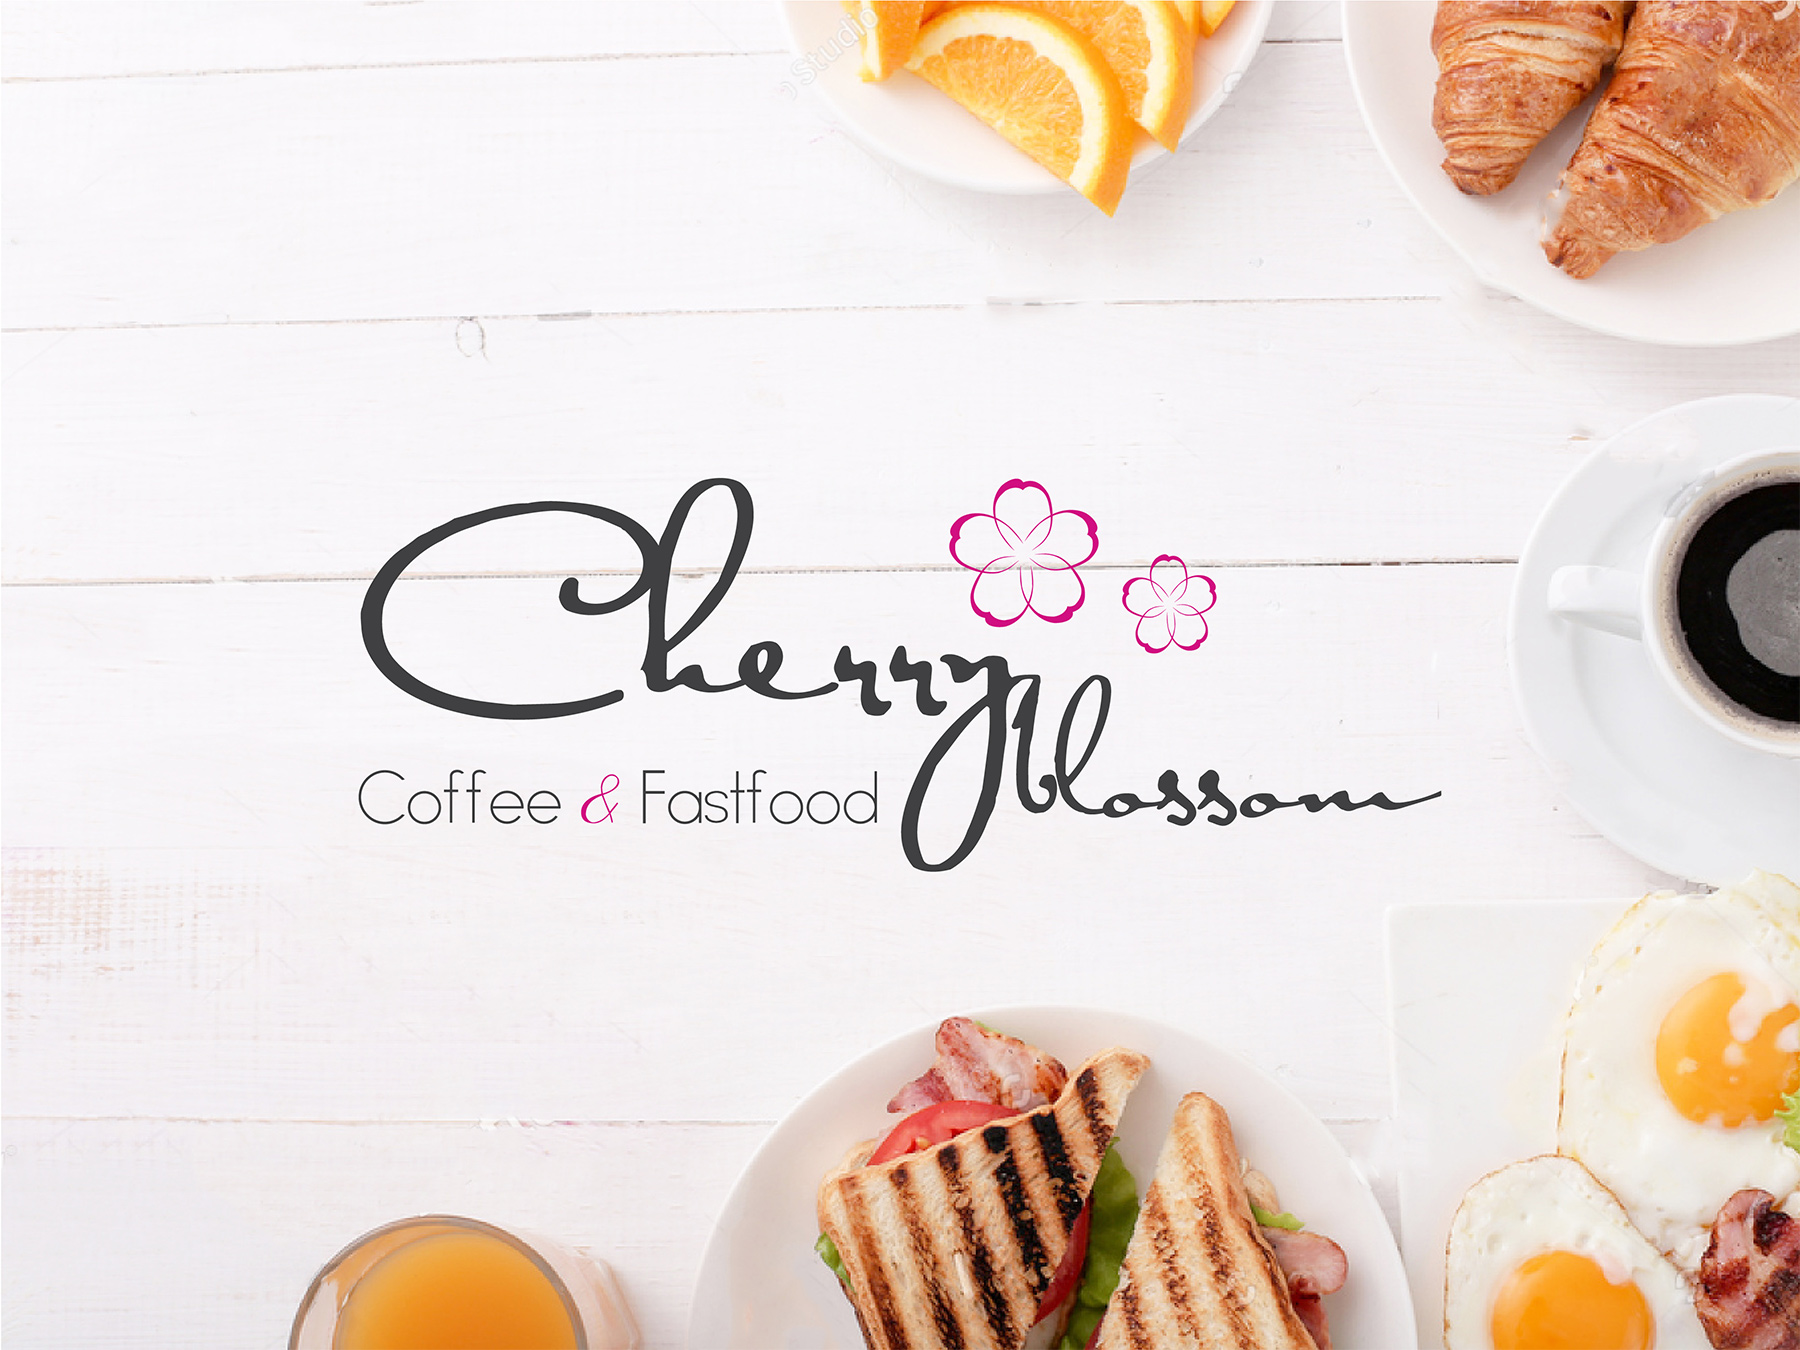 Thiết kế logo, CIP - Thương hiệu Cherry Blossom